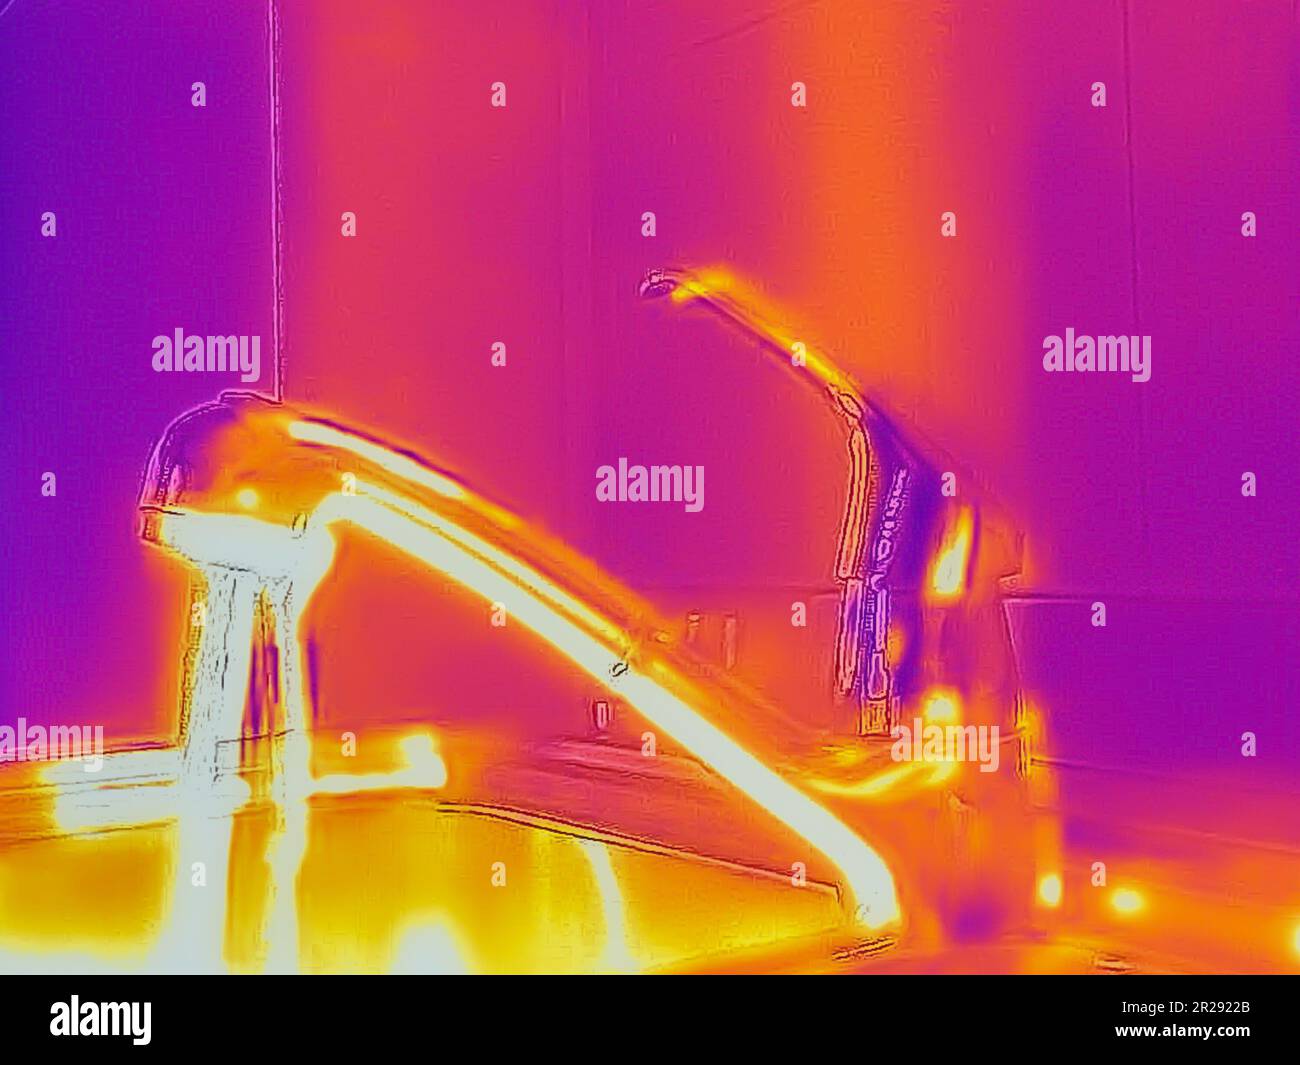 Ein Wärmebild eines Küchenhahns mit fließendem Wasser, das mit einer Infrarot-Wärmebildkamera erfasst wurde und verschiedene Temperaturen und Rohre hinter dem W zeigt Stockfoto